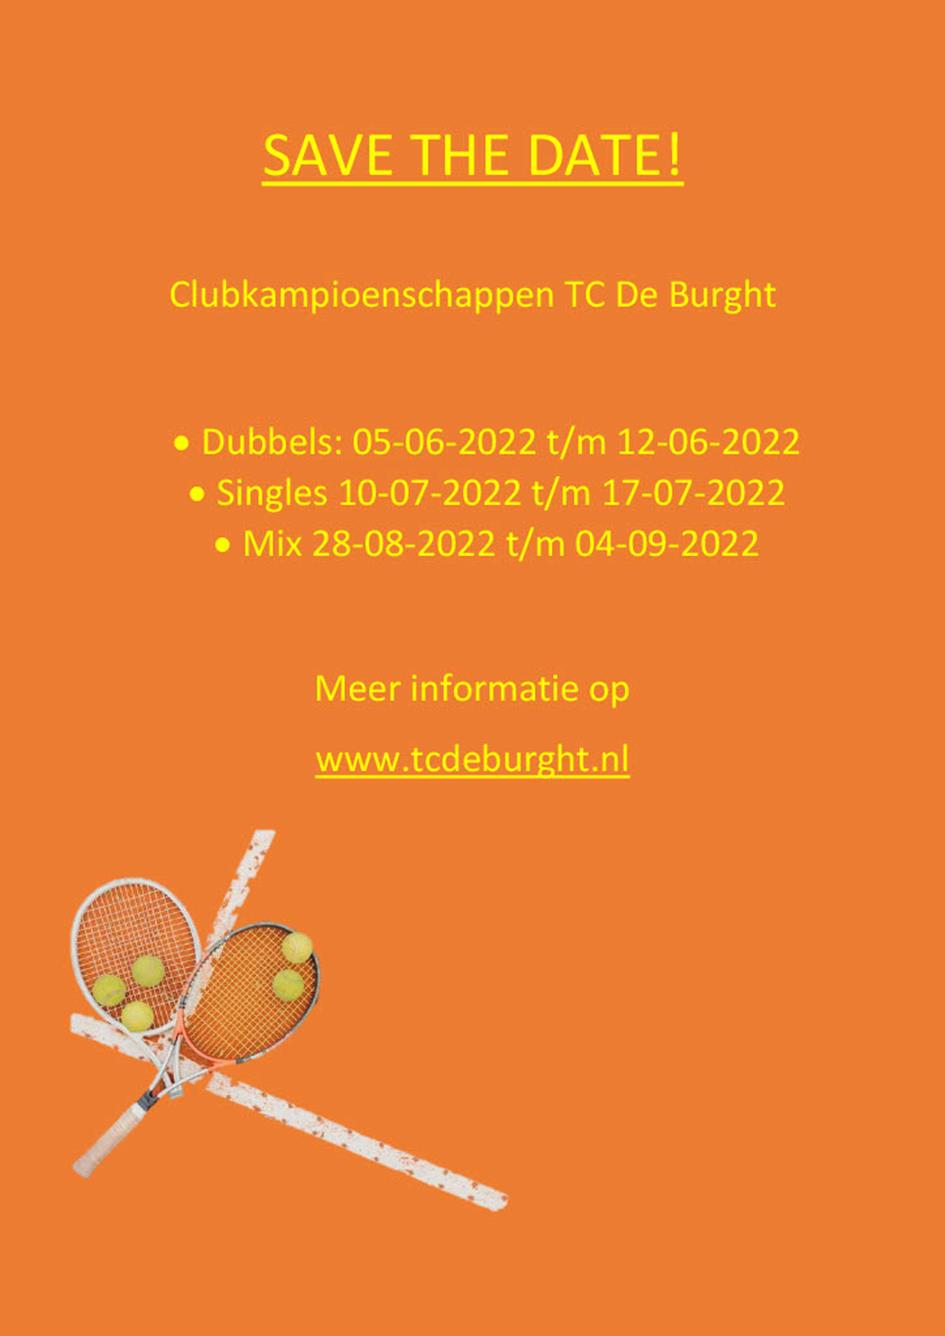 Clubkampioenschappen flyerposter1024_1.jpg